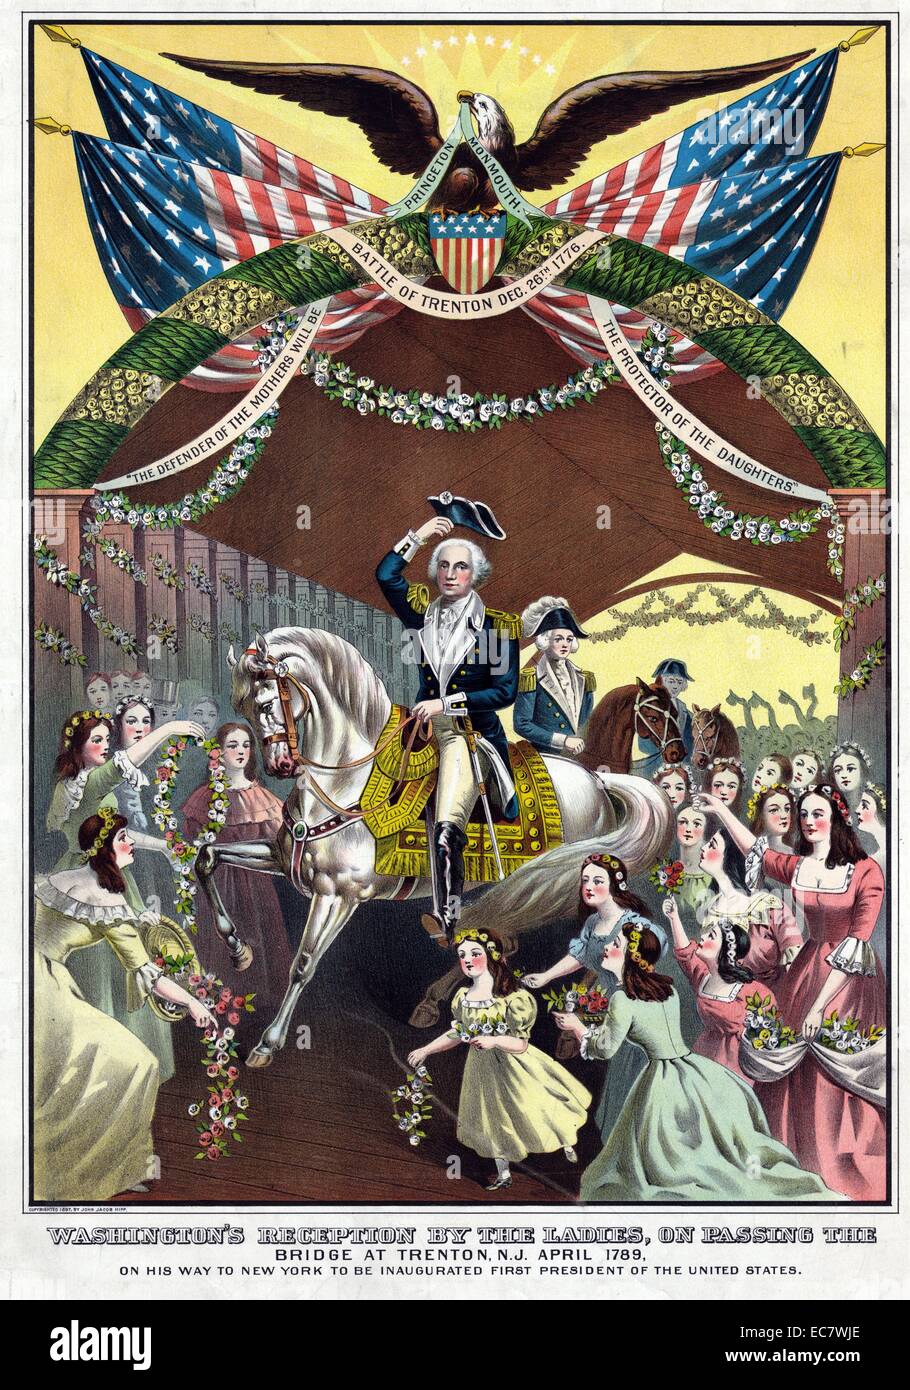 Washington la ricezione da parte del Signore, passando il ponte di Trenton, N.J. Aprile 1789, sul suo modo di New York per essere inaugurato il primo presidente degli Stati Uniti Foto Stock